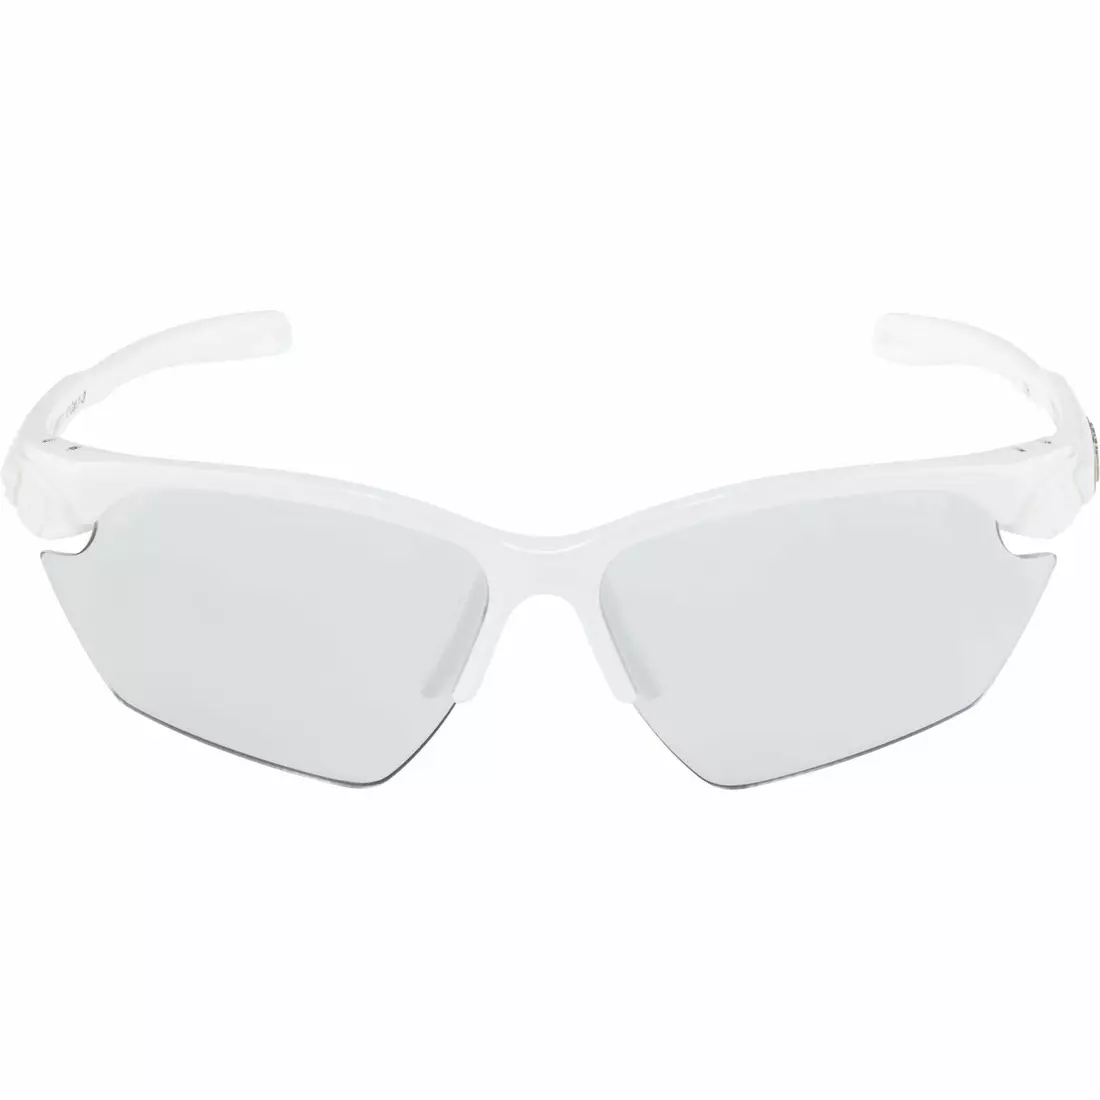 ALPINA fotochromatické sportovní brýle twist five HR S VL+ white A8597110